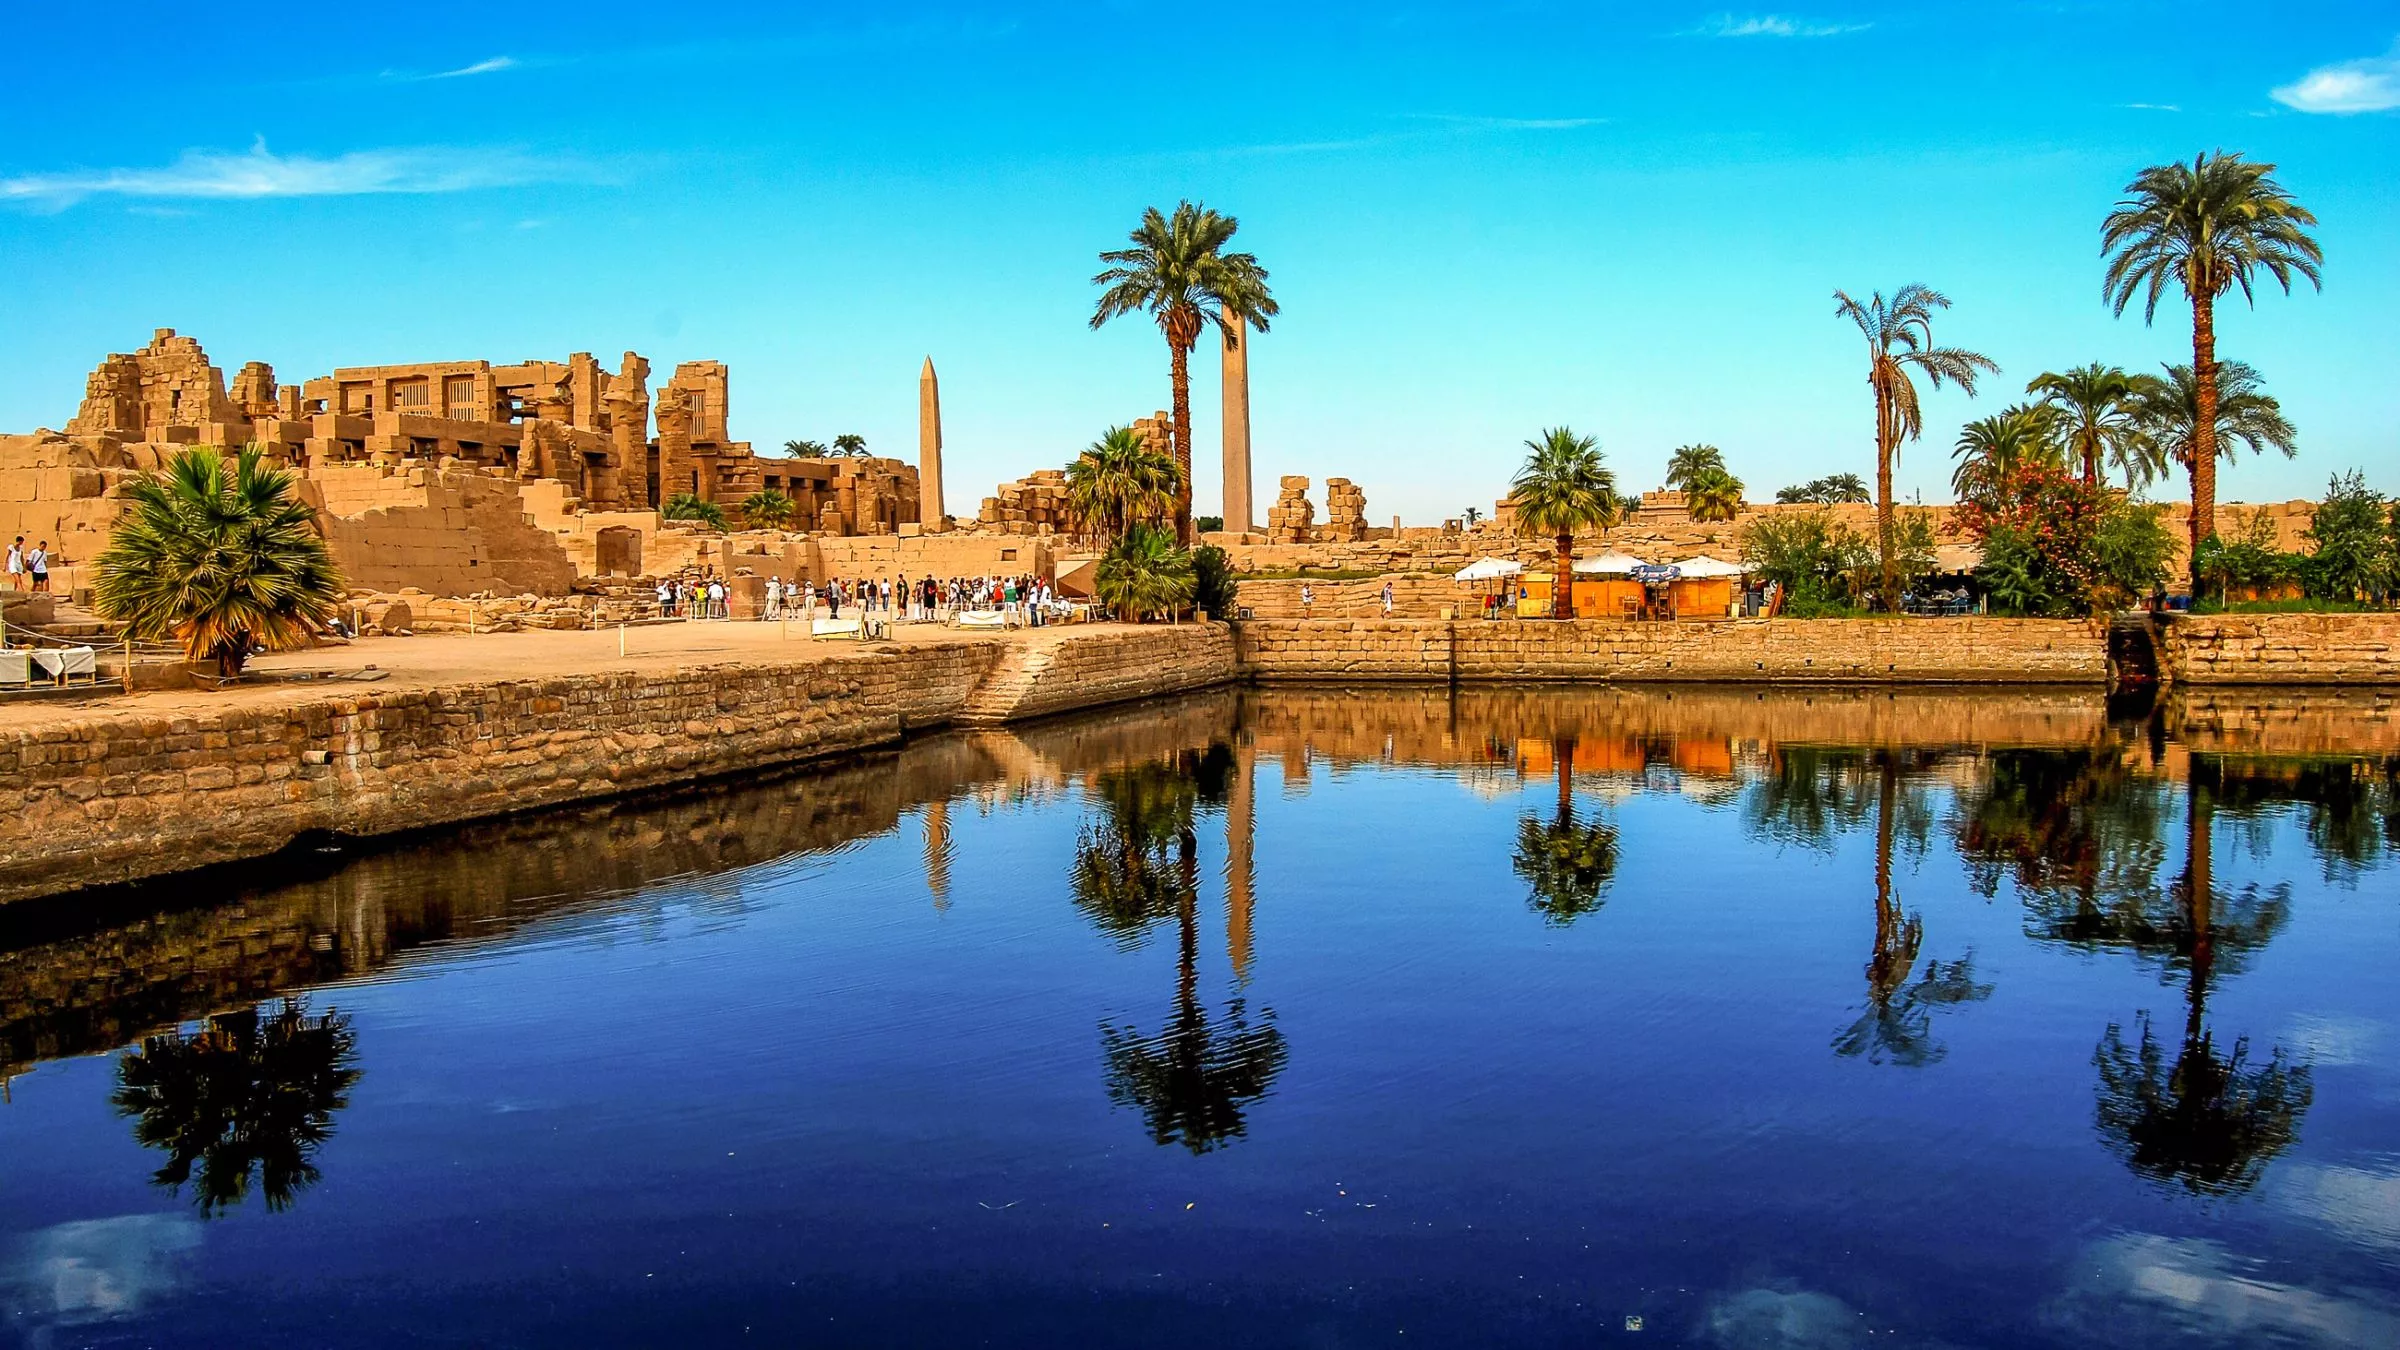 Am Nilufer unweit von Luxor liegen die Karnak-Tempel, die größte Tempelanlage Ägyptens © Adobestock/dietwalther